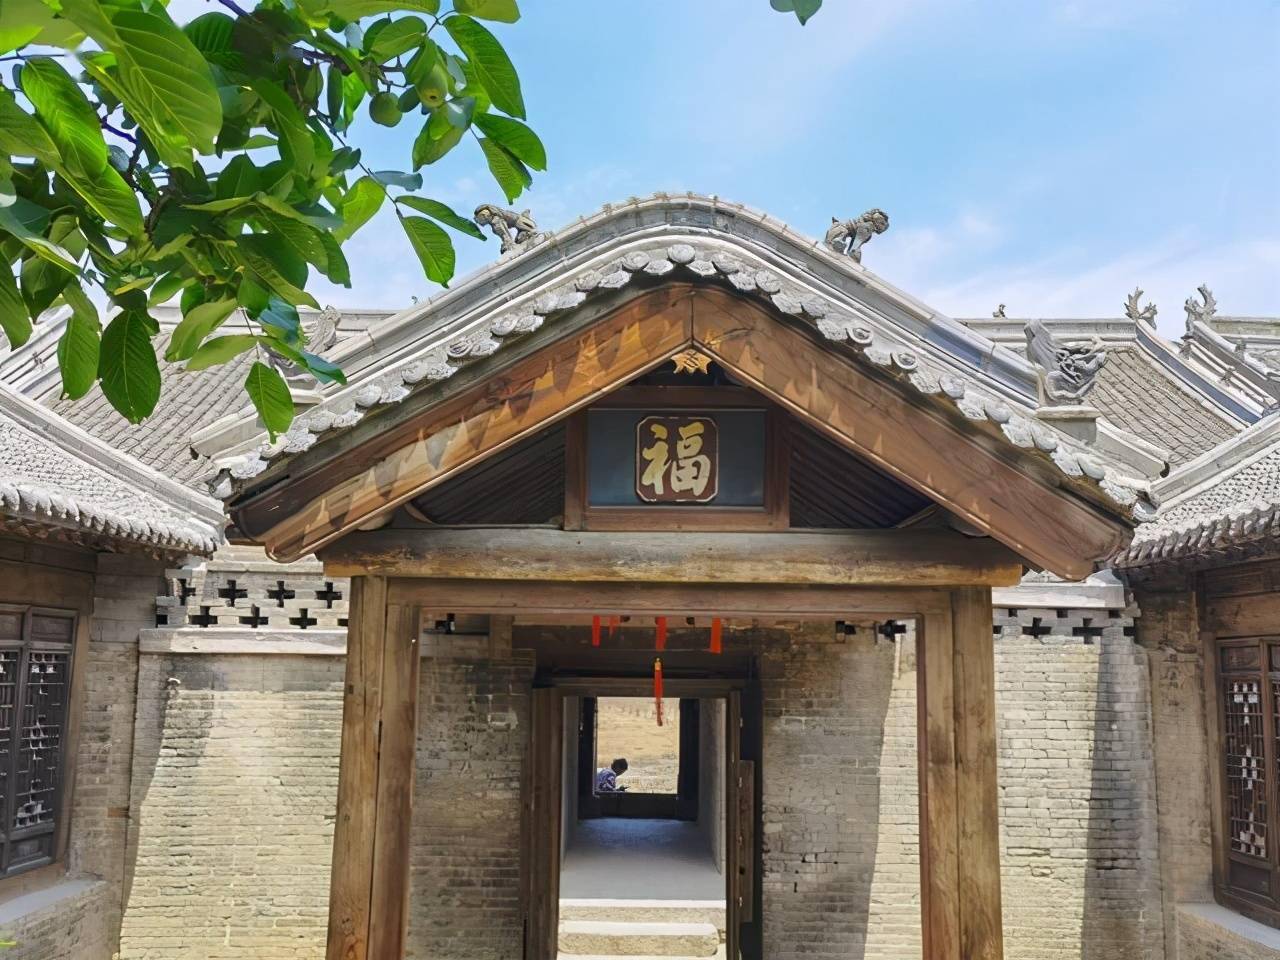 这里的古民居保存的非常的完好.还是河南省的重点文物保护单位.